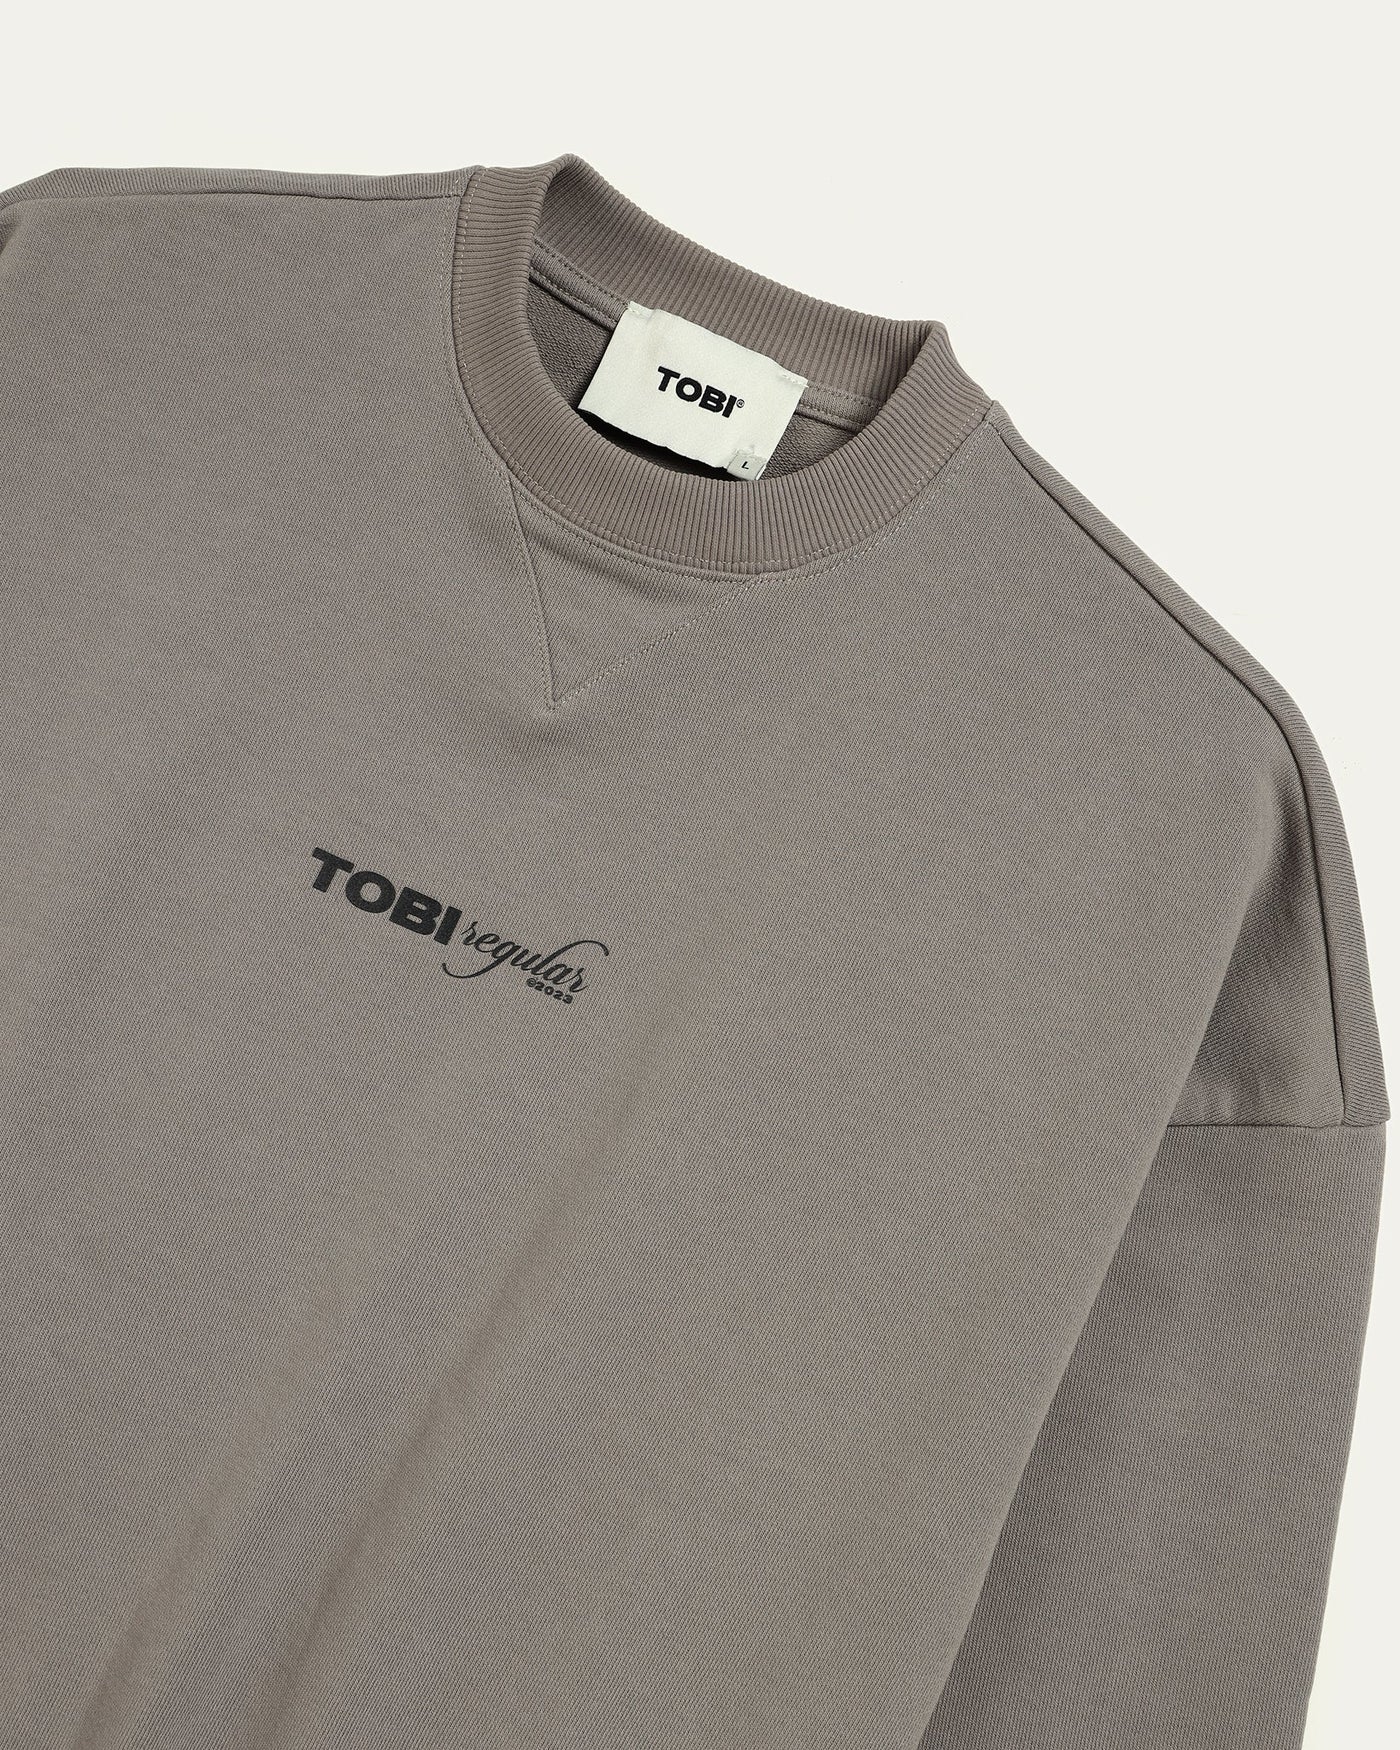 TOBI Regular Sweater - Cement - TOBI